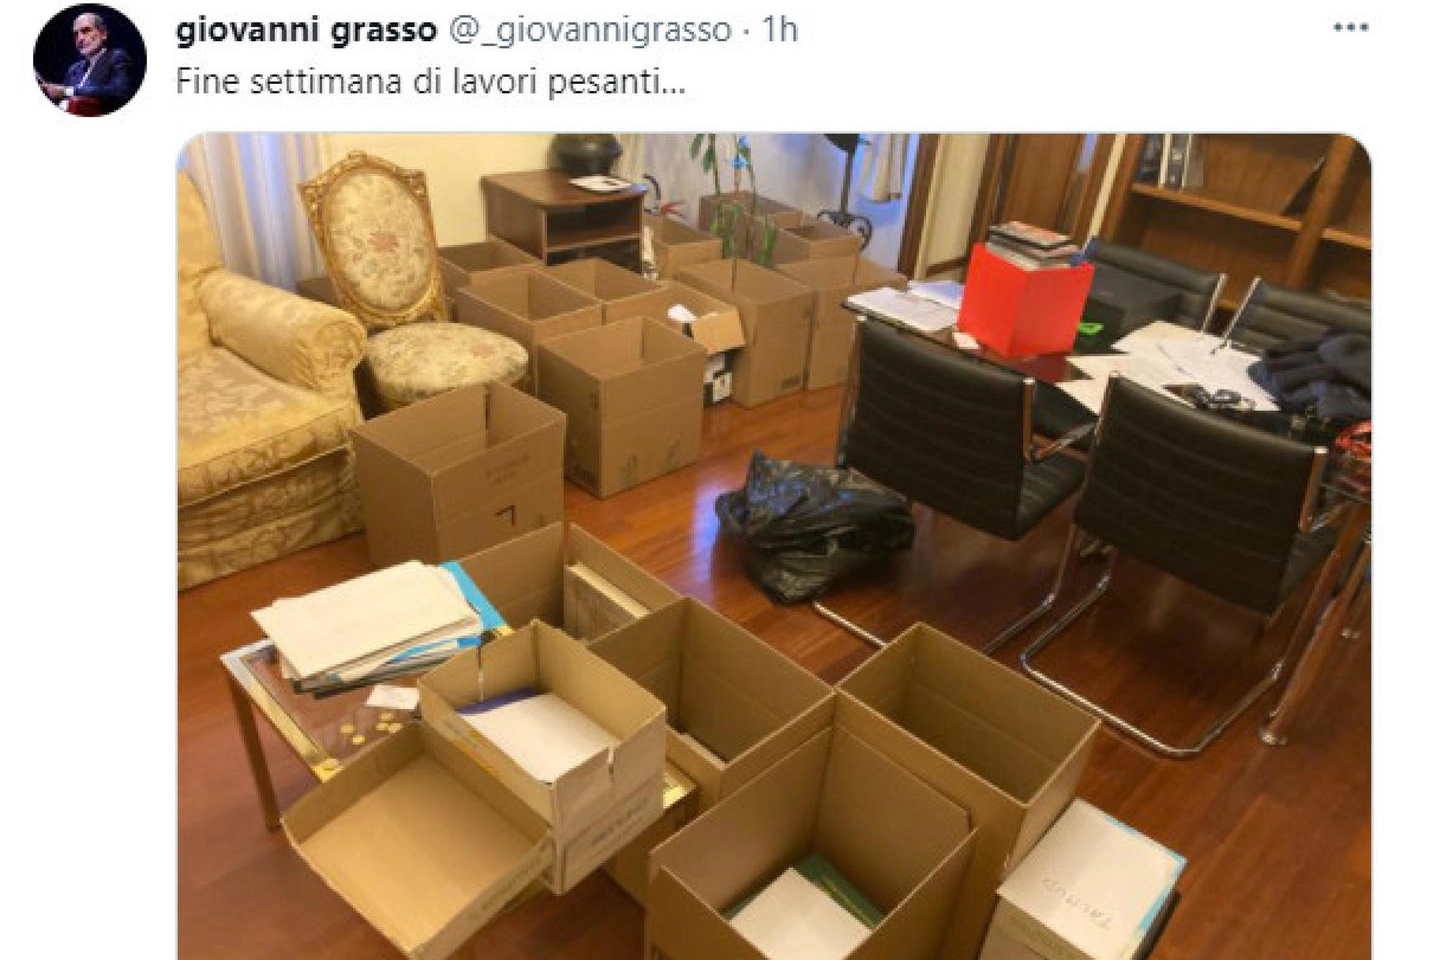 La foto di un ufficio, ingombro di scatoloni. L'ha pubblicata su Twitter Giovanni Grasso